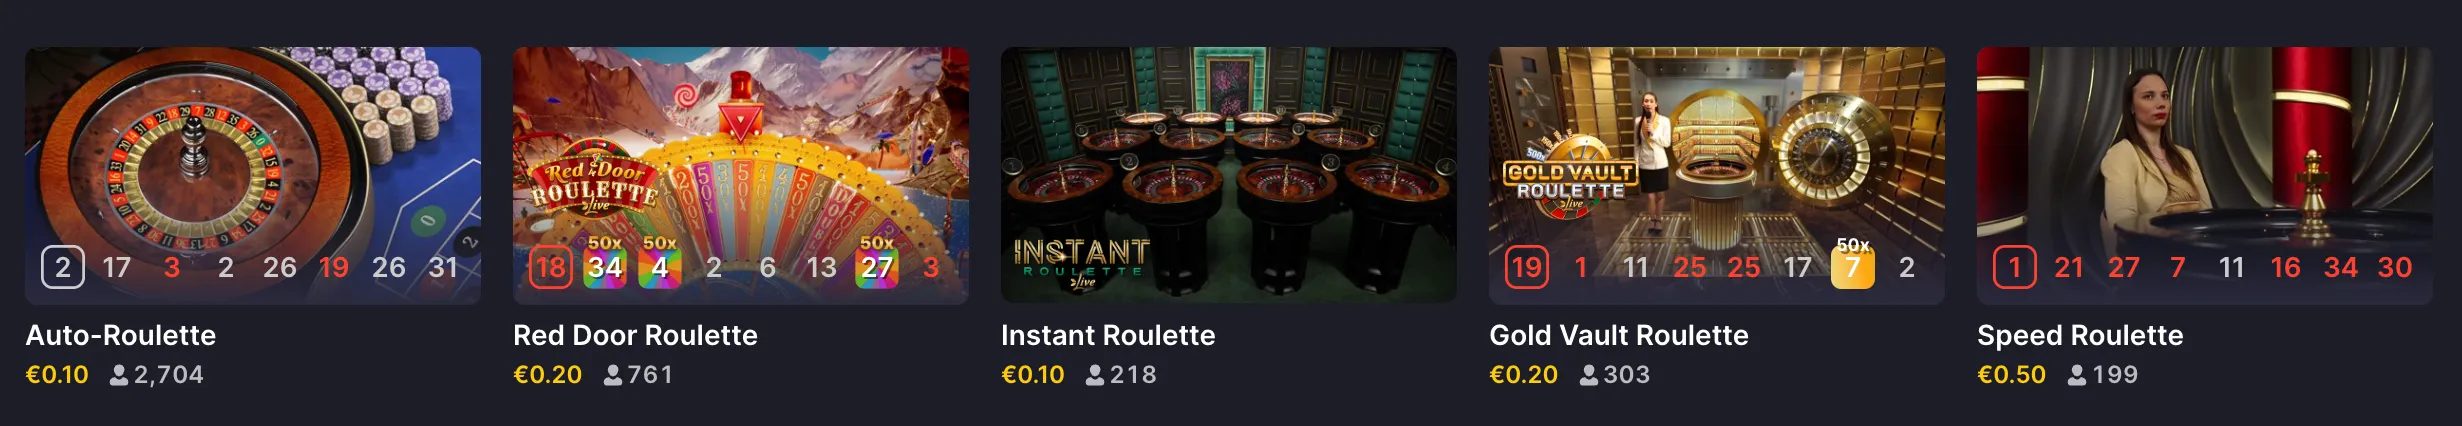 Online-Roulette über die Casino-App